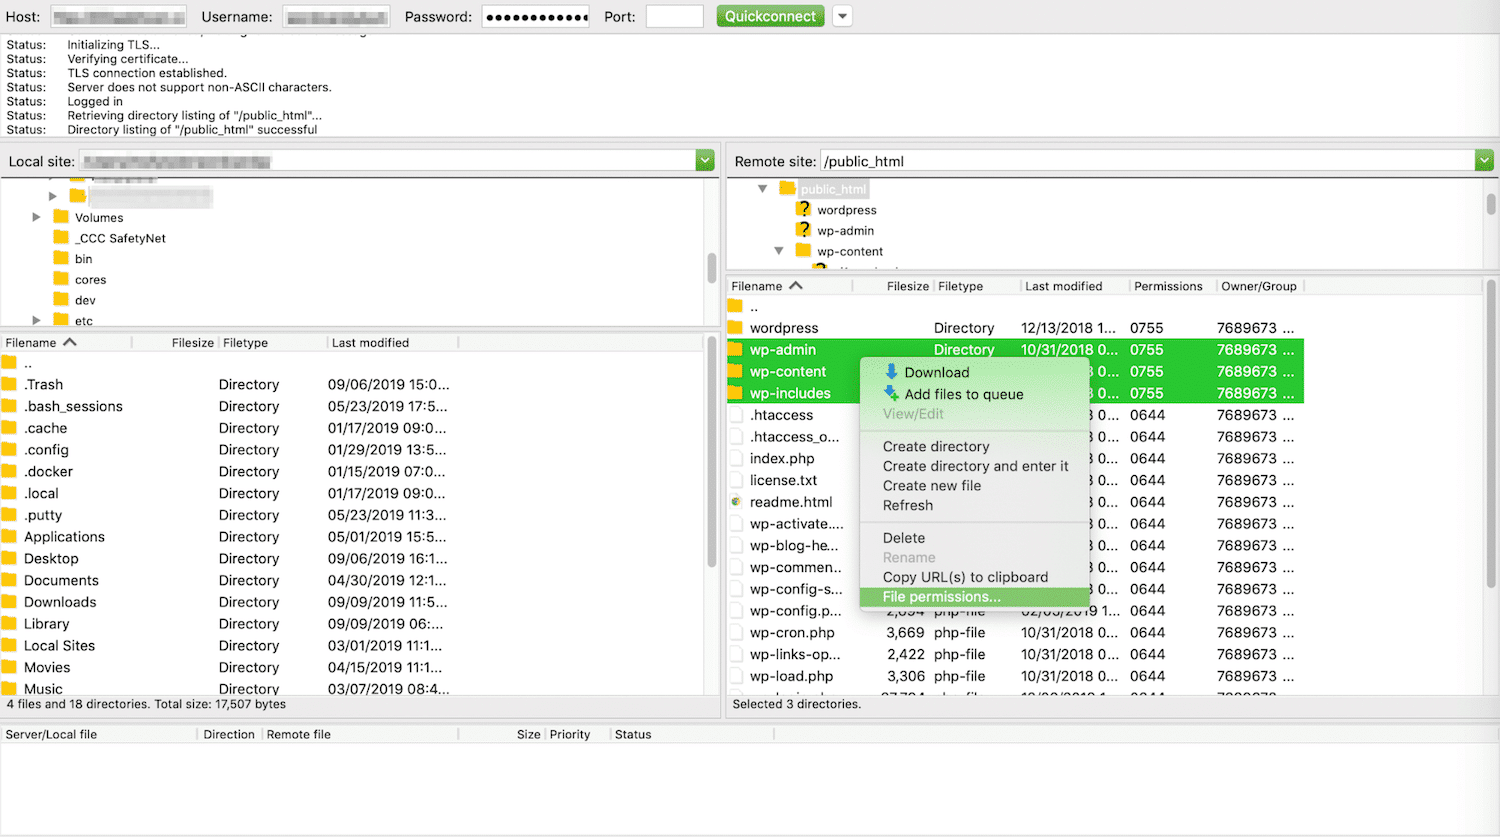 Schermata di un SFTP in cui sono state selezionate le cartelle wp-admin, wp-content e wp-include: nel menu a tendina aperto in loro corrispondenza, è selezionata l’opzione File Permissions per controllare i permessi dei file